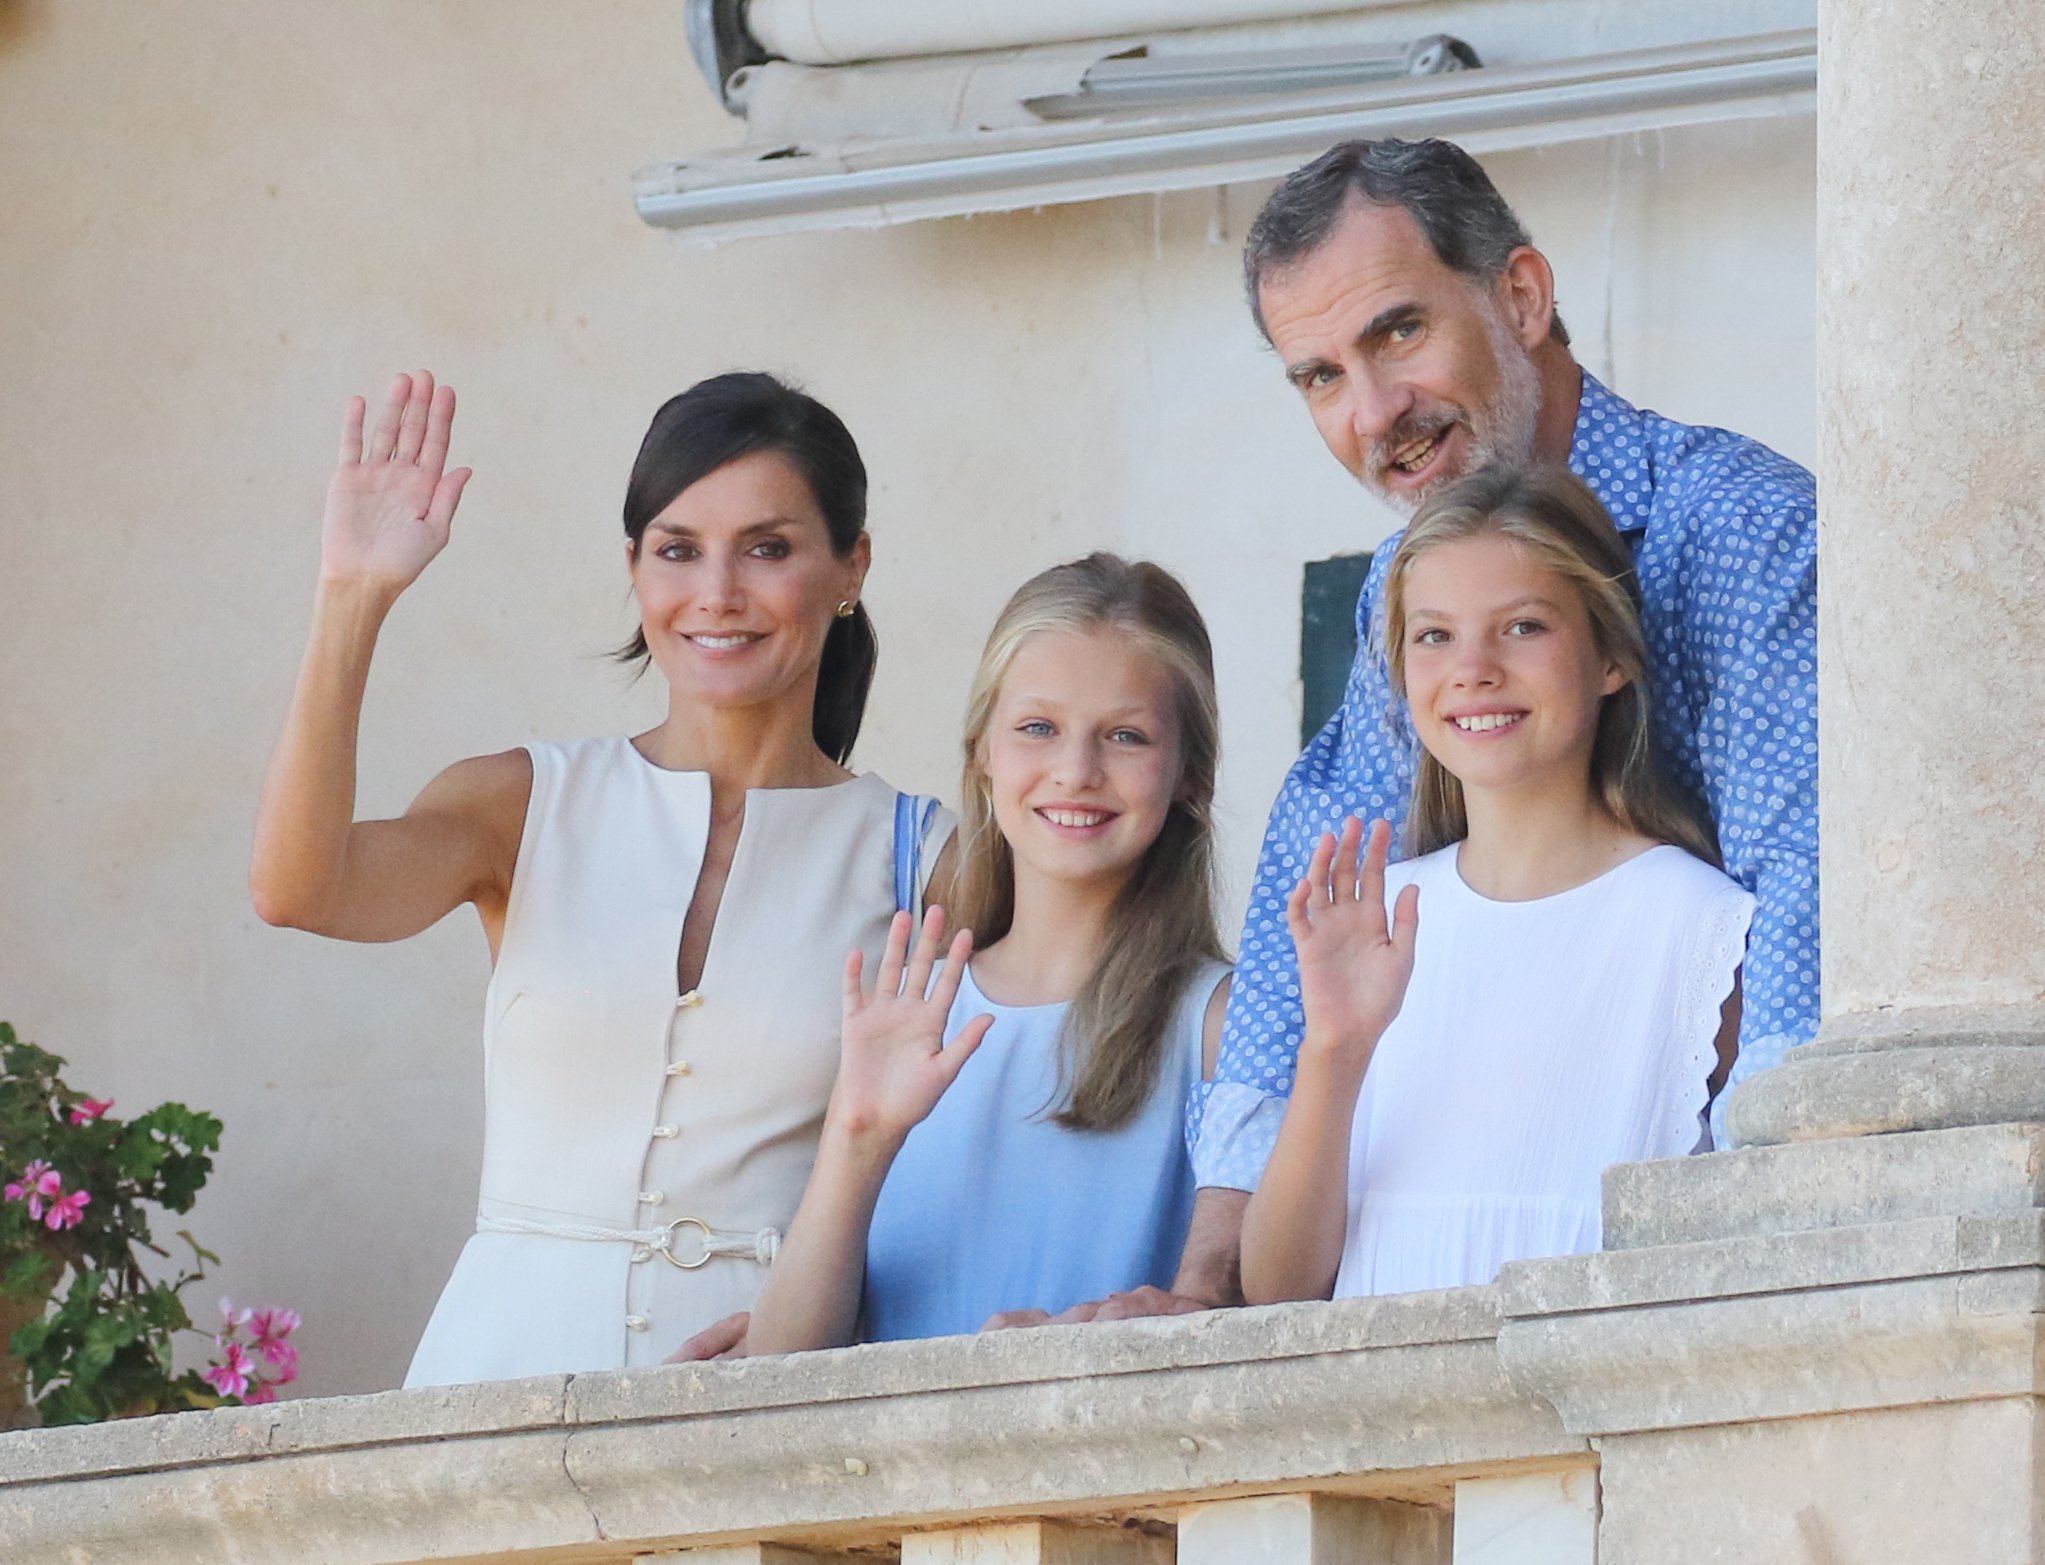 El rey Felipe VI de España, la reina Letizia de España, la princesa Leonor de España y la princesa Sofía de España visitan el museo 'Son Marroig' el 8 de agosto de 2019 en Palma de Mallorca, España. | Foto: Getty Images